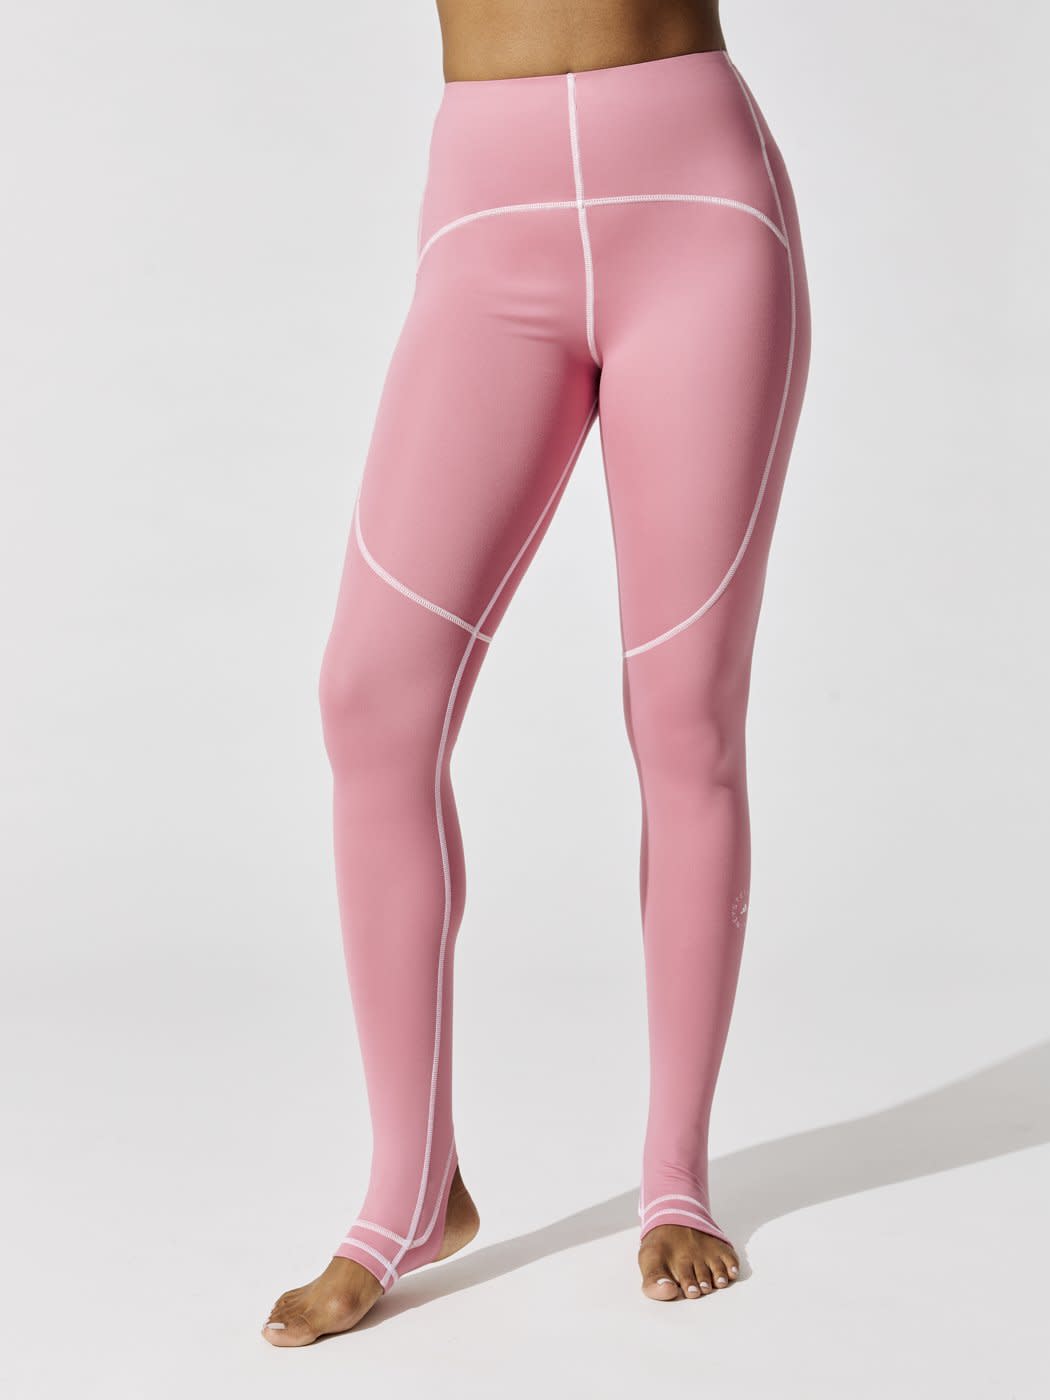 Adidas by Stella McCartney Truestrength Yoga Tight